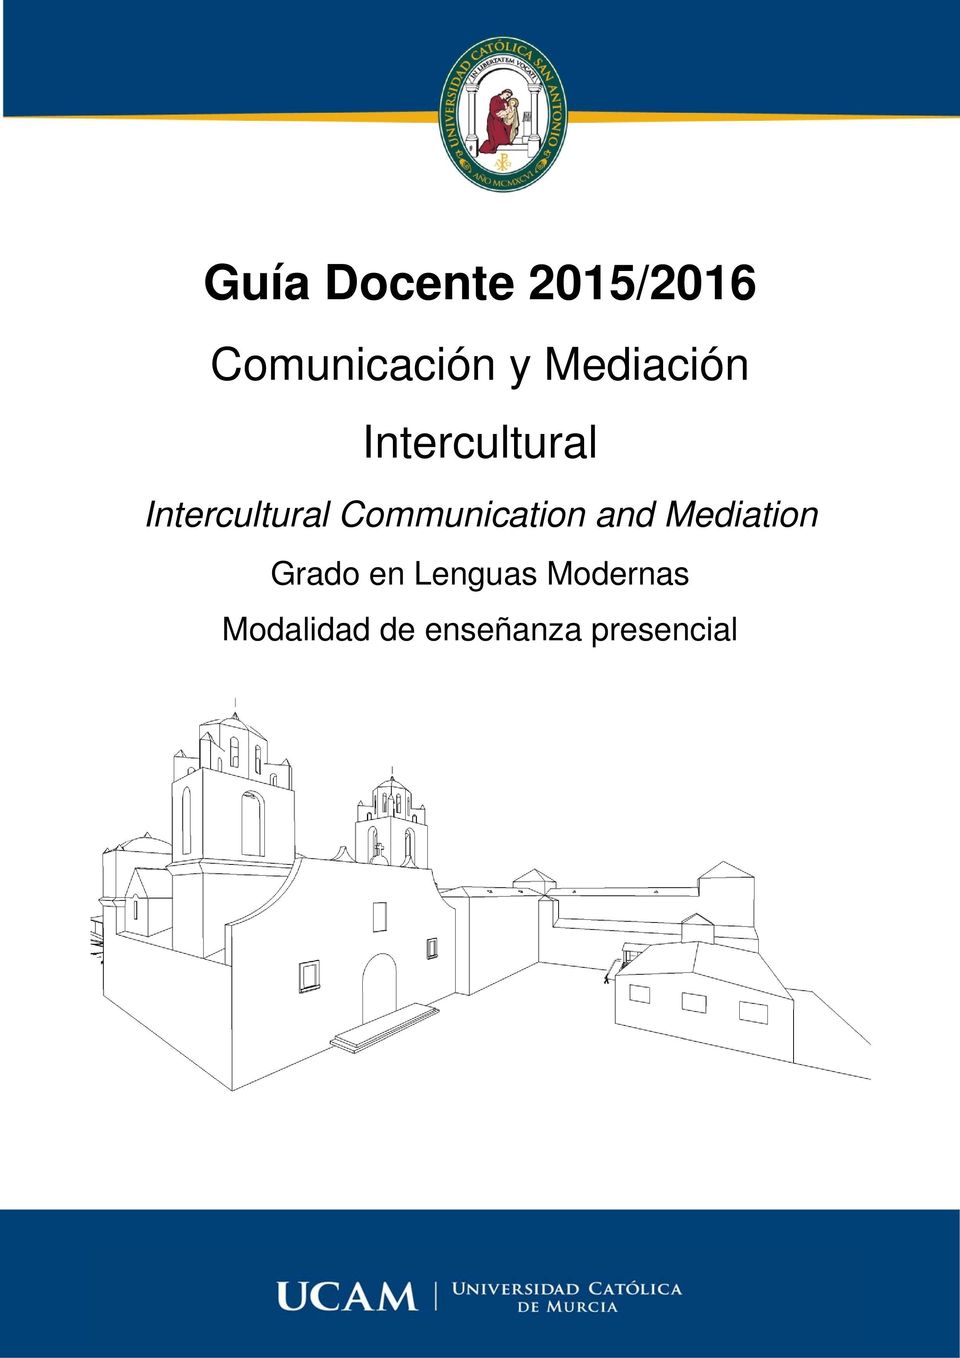 Communication and Mediation Grado en